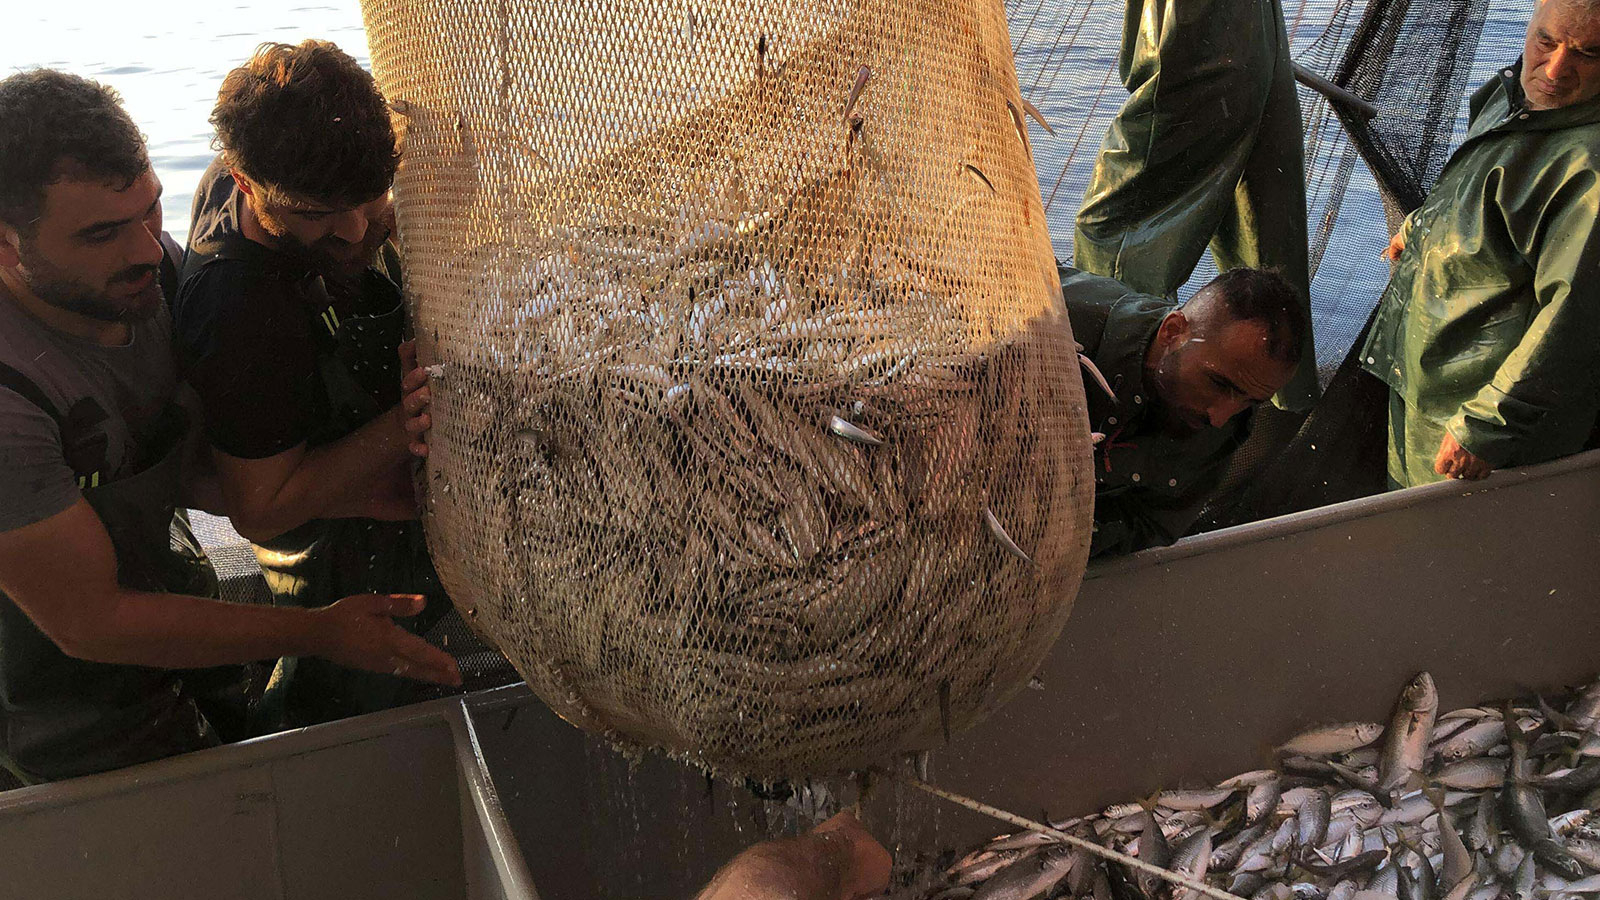 Balık Sezonu Öncesinde ‘Kademeli Yasak’ Çağrısı: Denizlerimizin Kanayan Yarası”